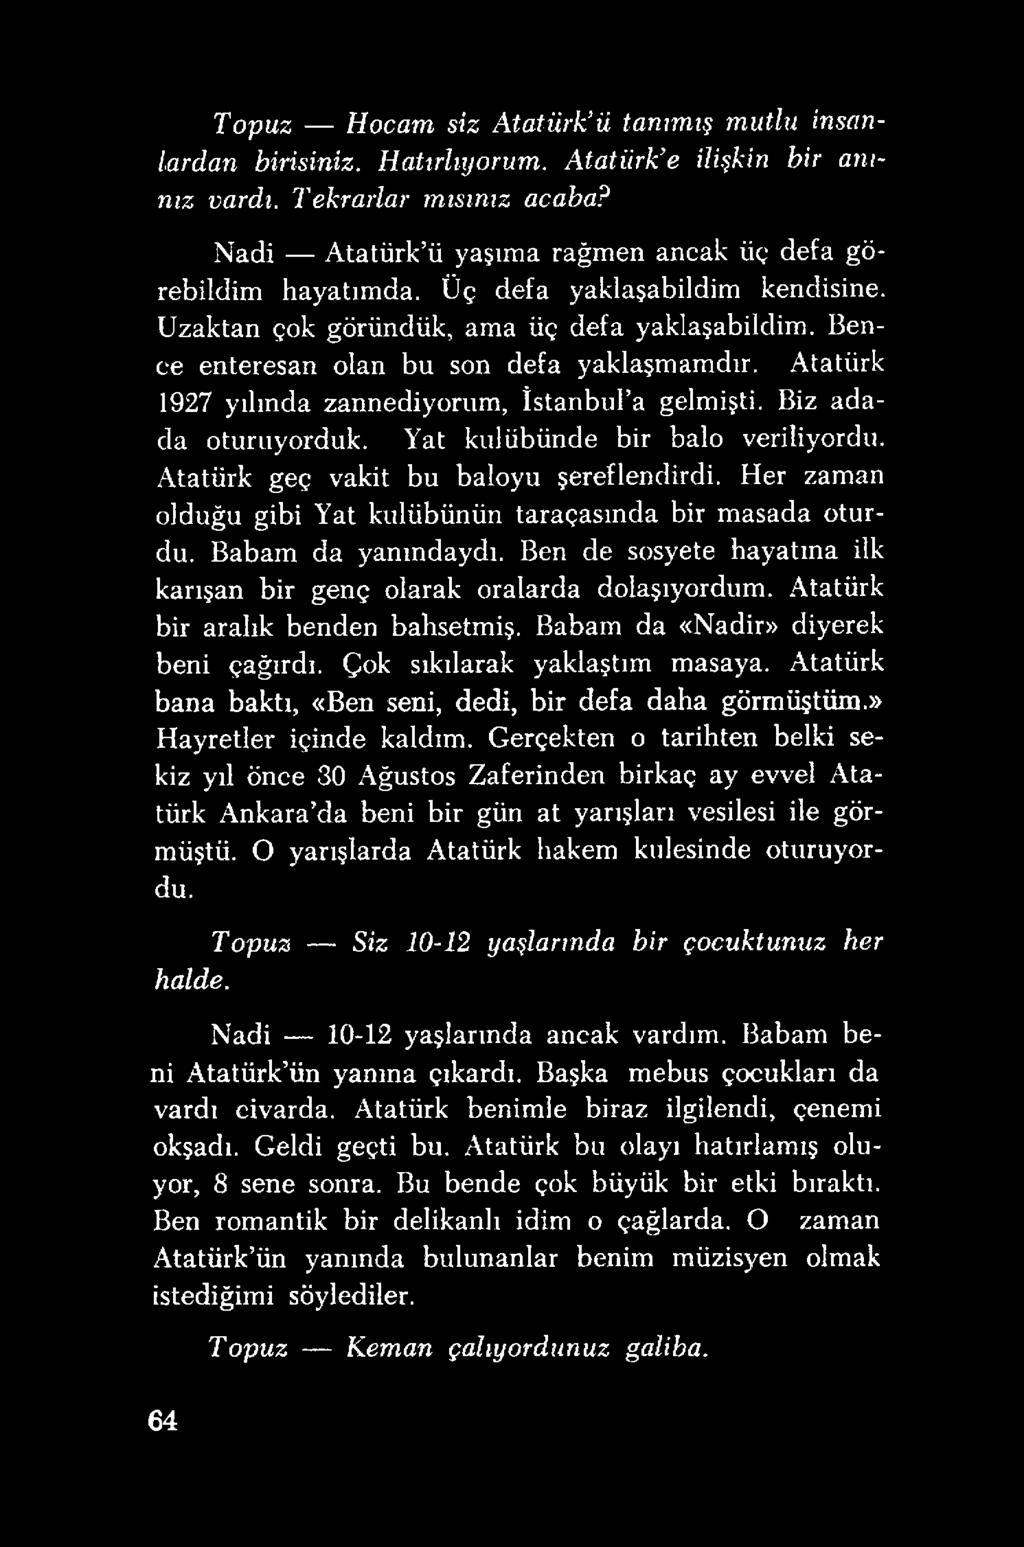 Atatürk 1927 yılında zannediyorum, İstanbul a gelmişti. Biz adada oturuyorduk. Yat kulübünde bir balo veriliyordu. Atatürk geç vakit bu baloyu şereflendirdi.